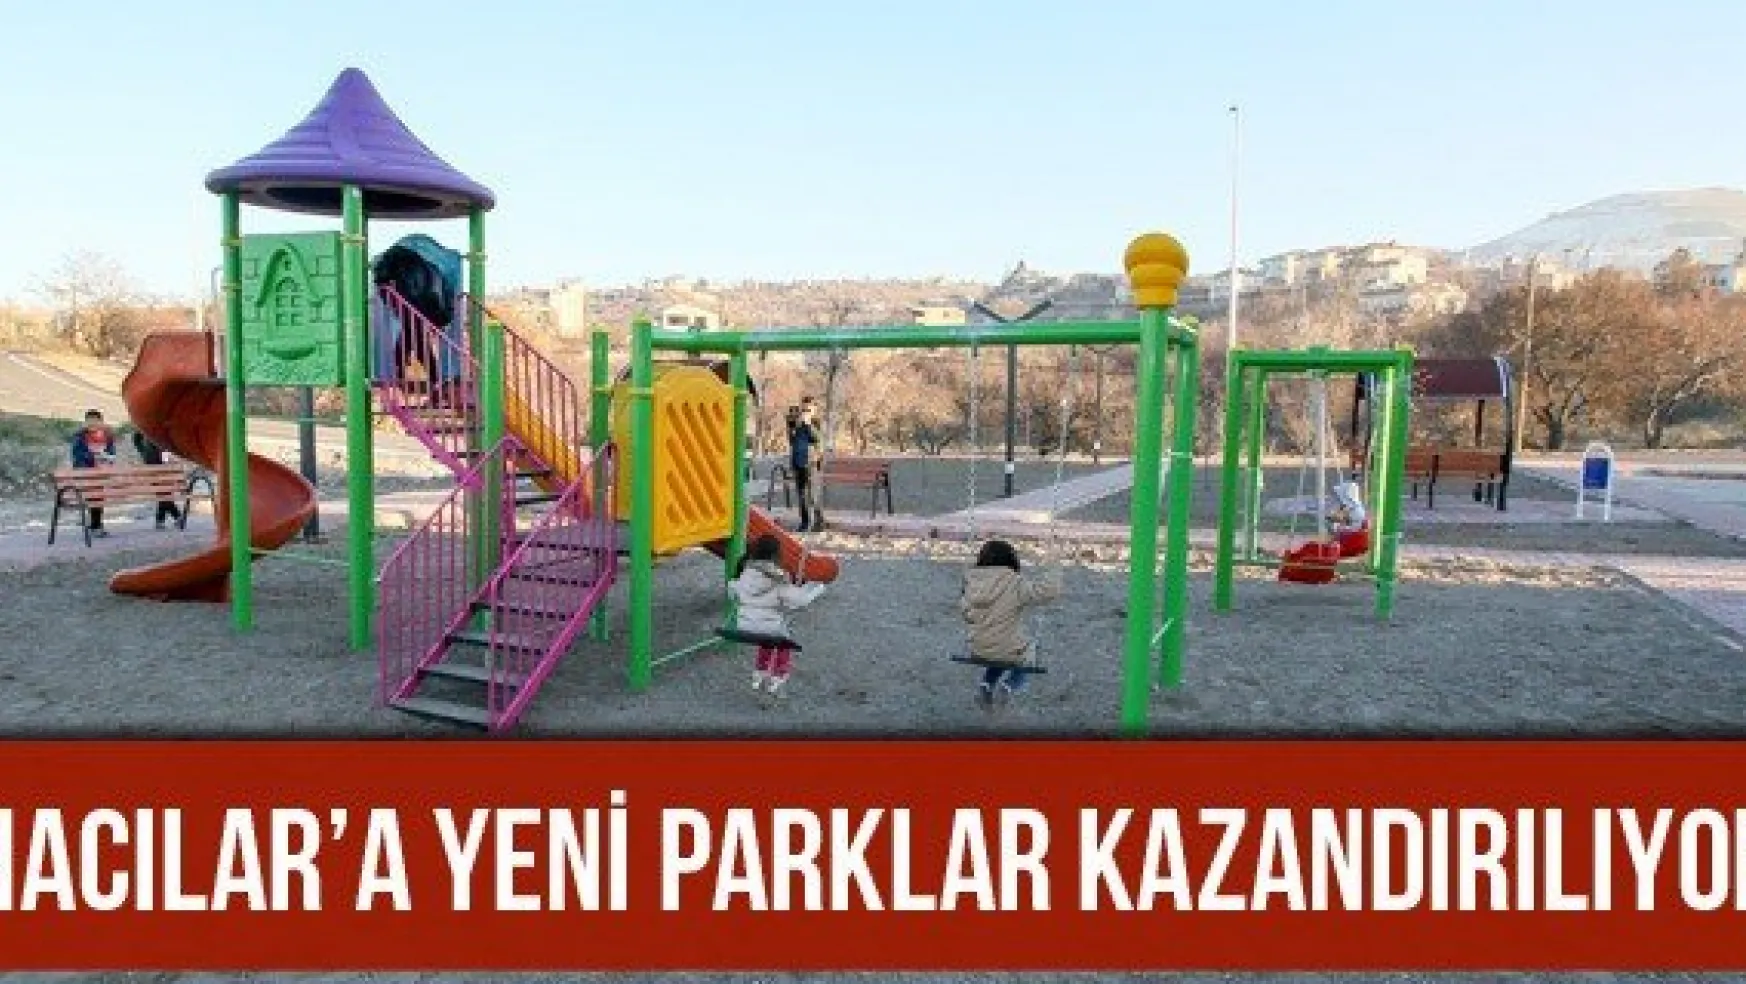 Hacılar'a yeni parklar kazandırılıyor